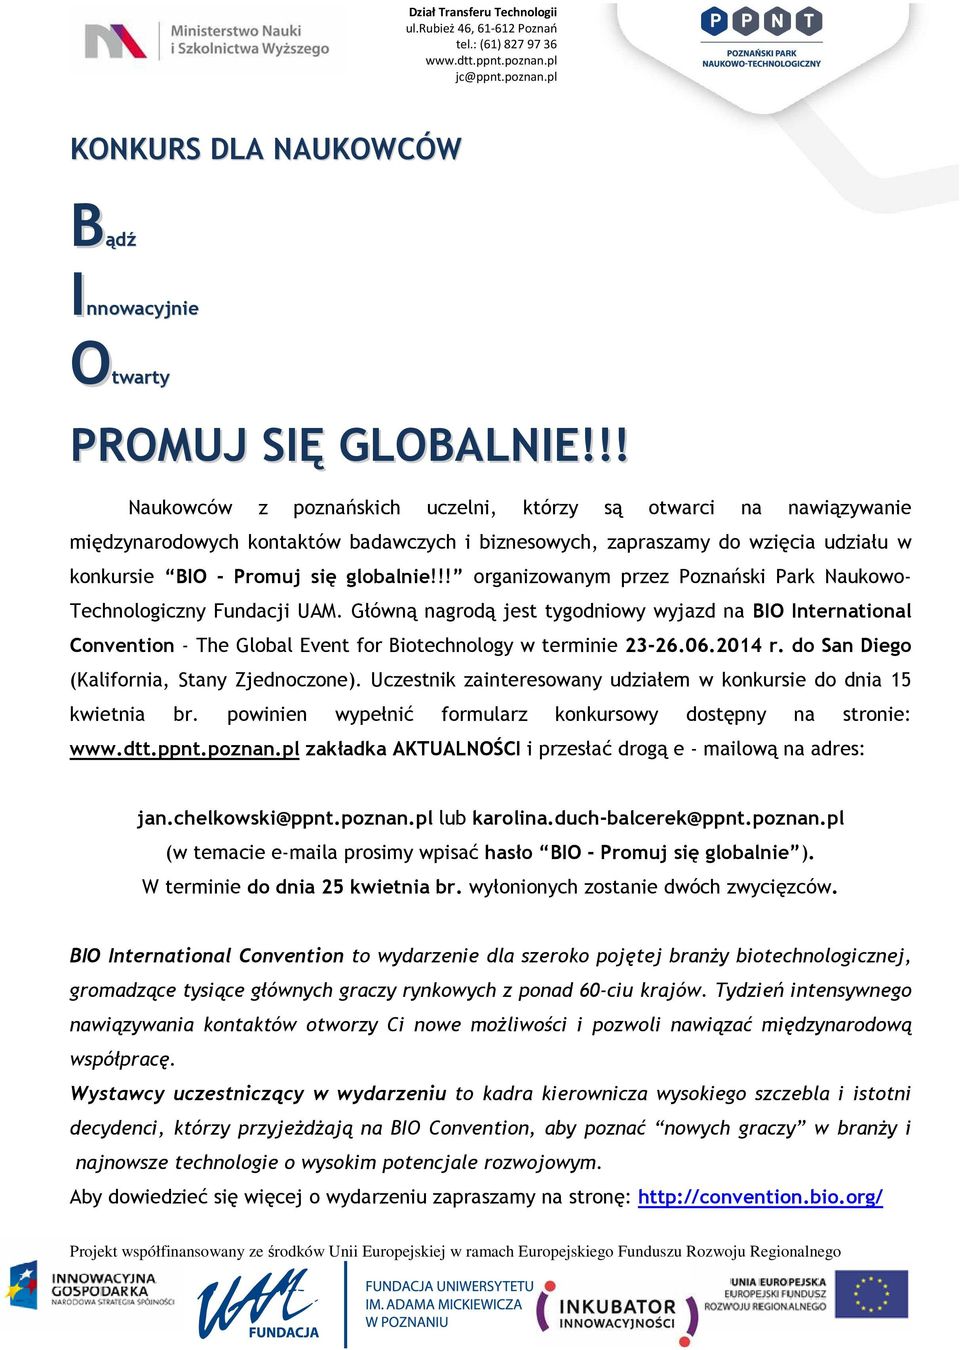 !! organizowanym przez Poznański Park Naukowo- Technologiczny Fundacji UAM. Główną nagrodą jest tygodniowy wyjazd na BIO International Convention - The Global Event for Biotechnology w terminie 23-26.